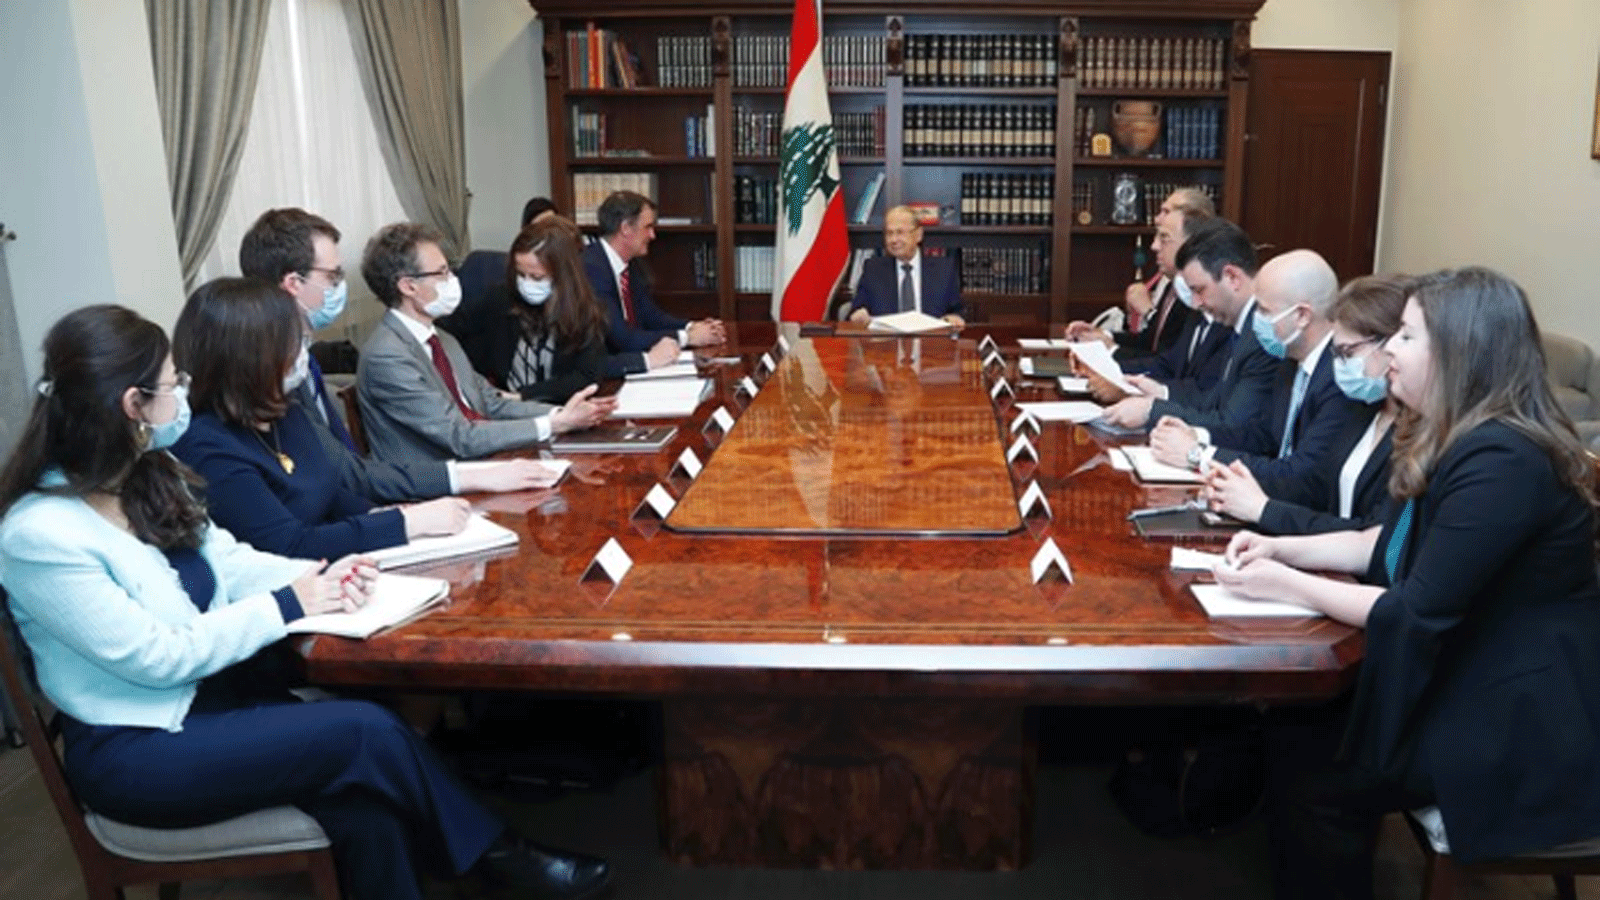  رئيس الجمهورية اللبنانية ميشال عون يلتقي رئيس بعثة صندوق النقد الدولي ارنستو ريغو راميريز على رأس وفد من صندوق النقد الدولي.